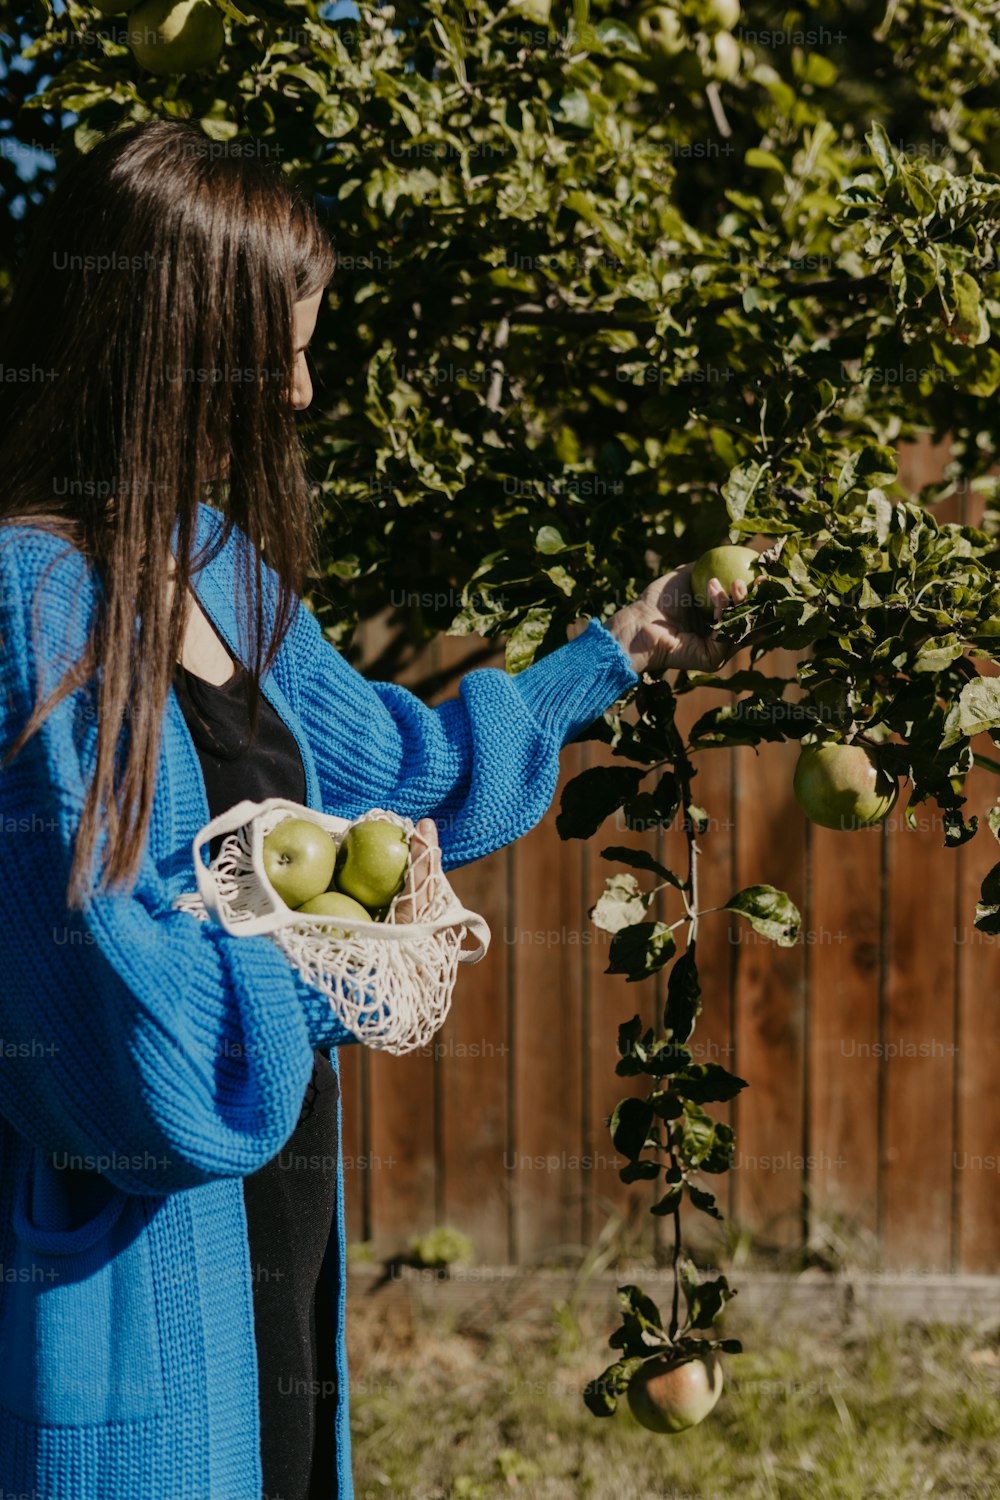 Una mujer está recogiendo manzanas de un árbol